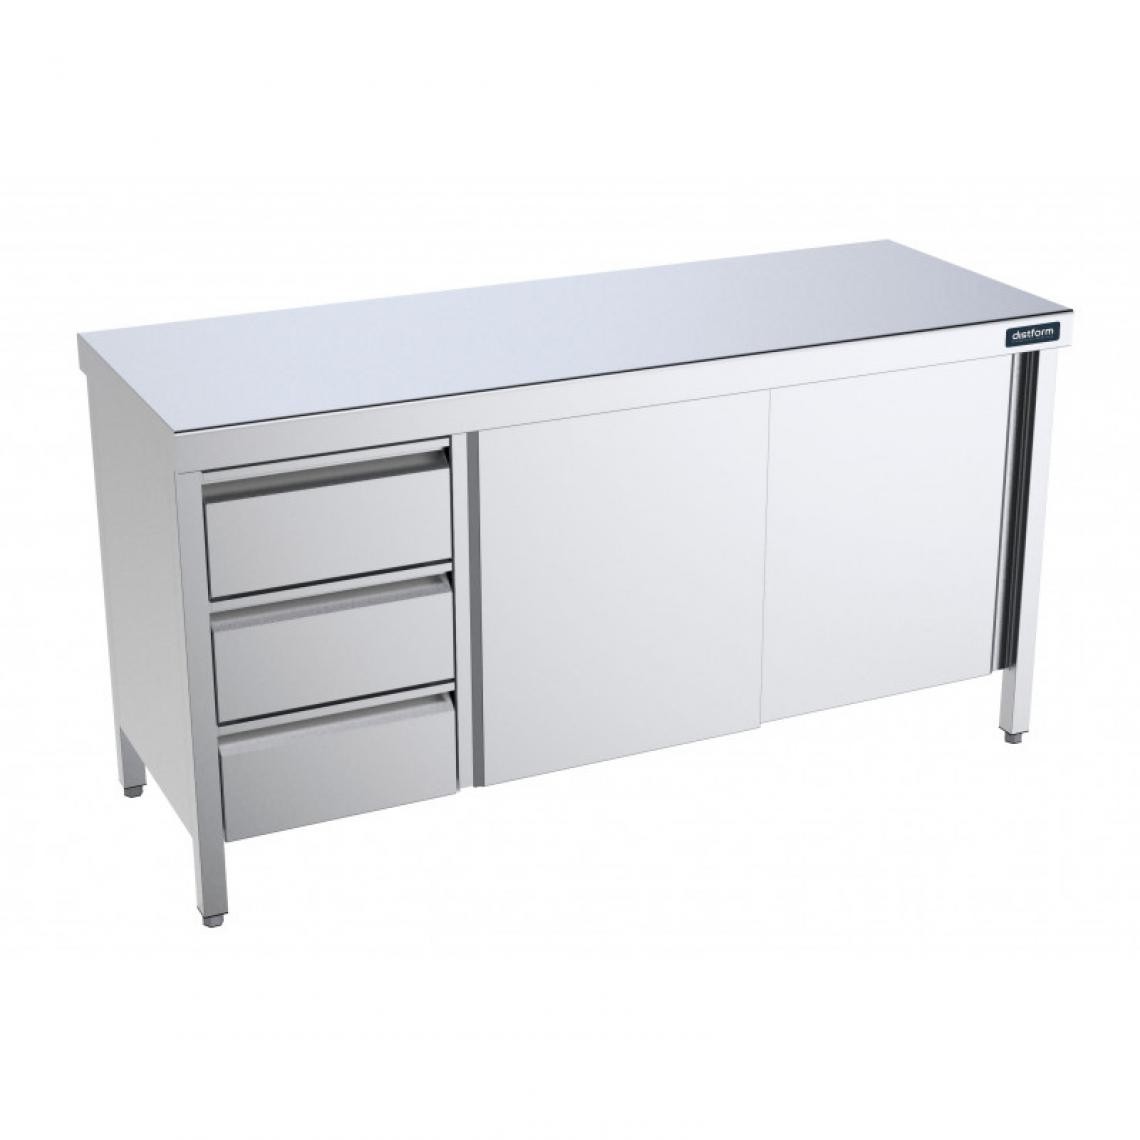 DISTFORM - Table Inox centrale avec portes coulissantes et tiroirs à gauche - Gamme 600 - Distform - Acier inoxydable1400x600 - Tables à manger